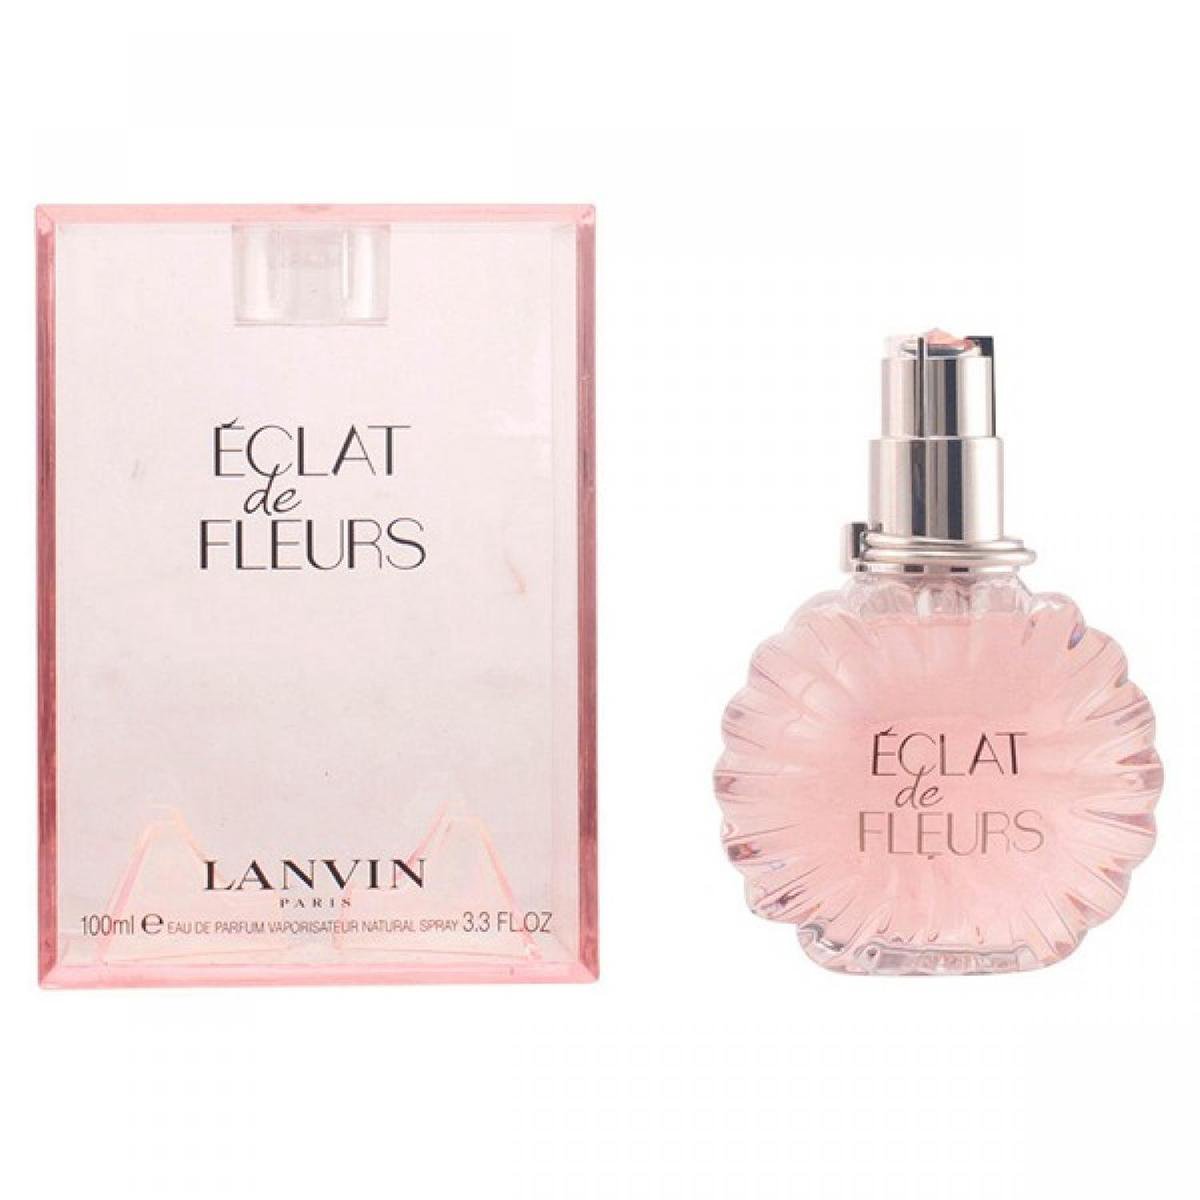 Lanvin Eclat De Fleurs - 100ml - Eau de parfum